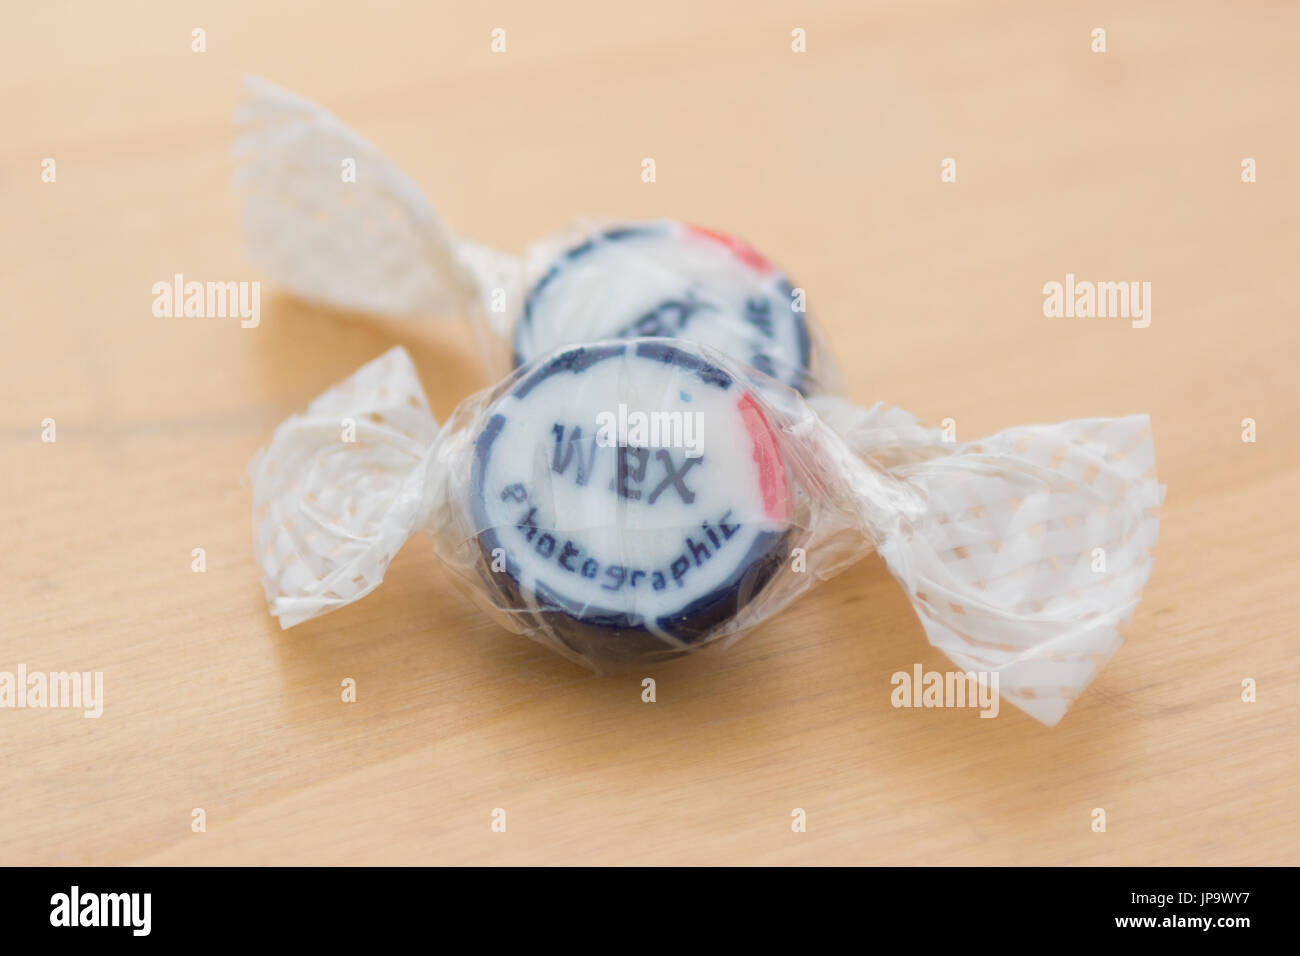 Werbe Rock Süßigkeiten bei Online-Bestellung von Wex fotografischen eingeschlossen Stockfoto